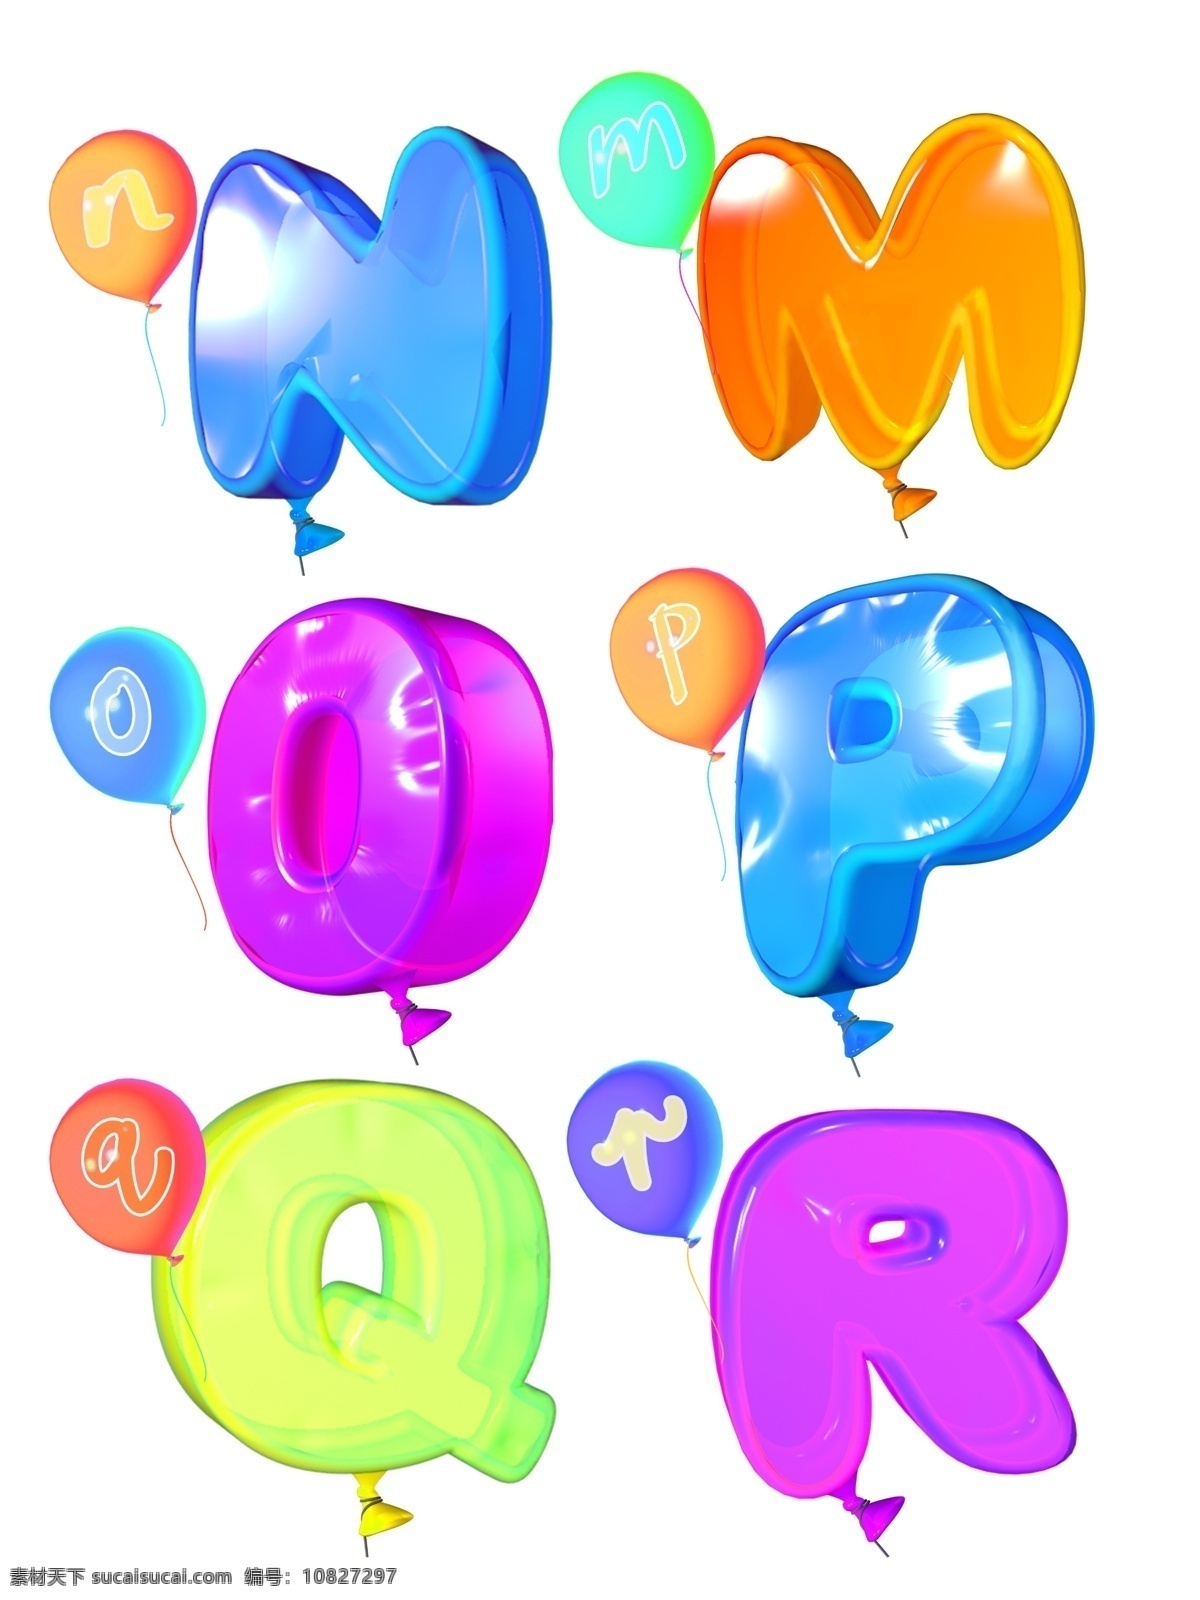 三维 立体 卡通 可爱 电商 气球 字母 元素 3d 英文 炫彩 时尚 色彩 平面 店铺 装修 招贴 免抠图 大写 小写 罗马字 视觉 海报